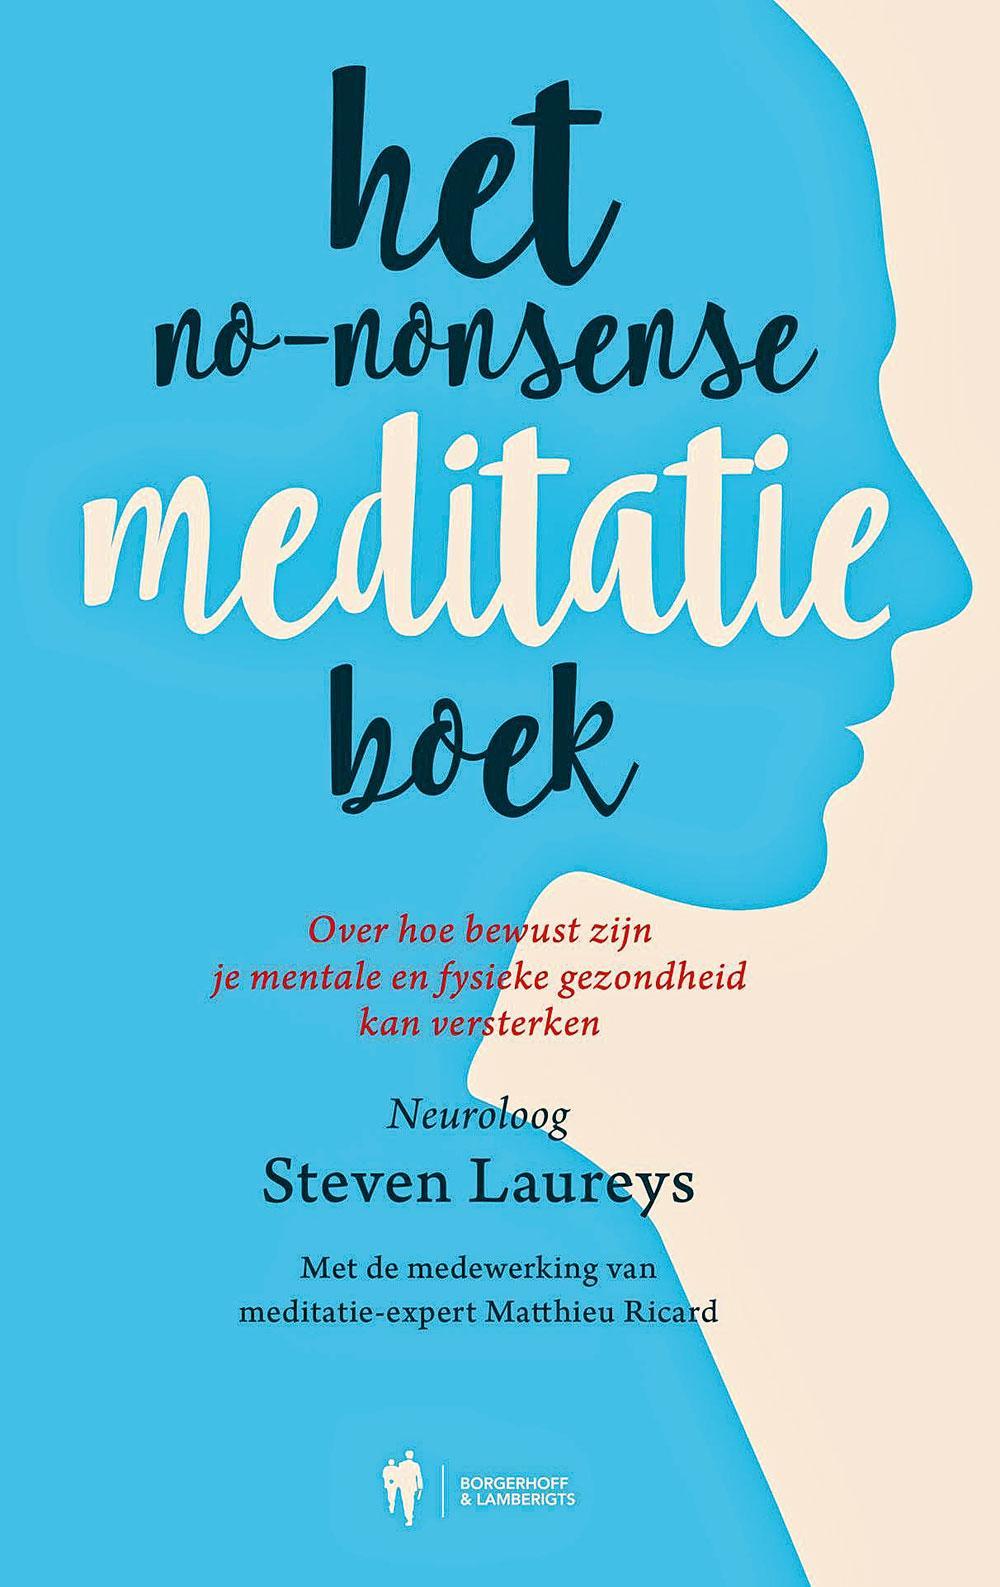 Het No-nonsense Meditatieboek, Steven Laureys, Borgerhoff & Lamberigts, 208 blz., 22,99 euro